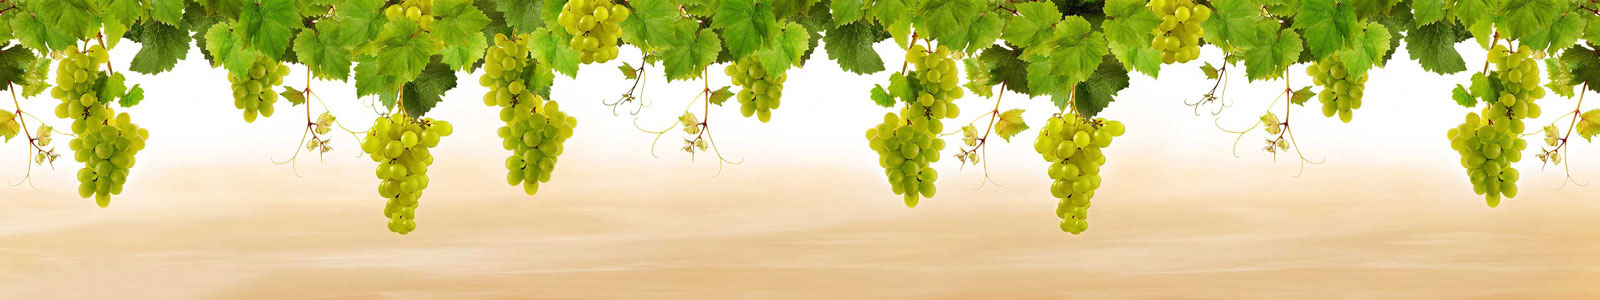 №6095 - Свисающие ветки винограда